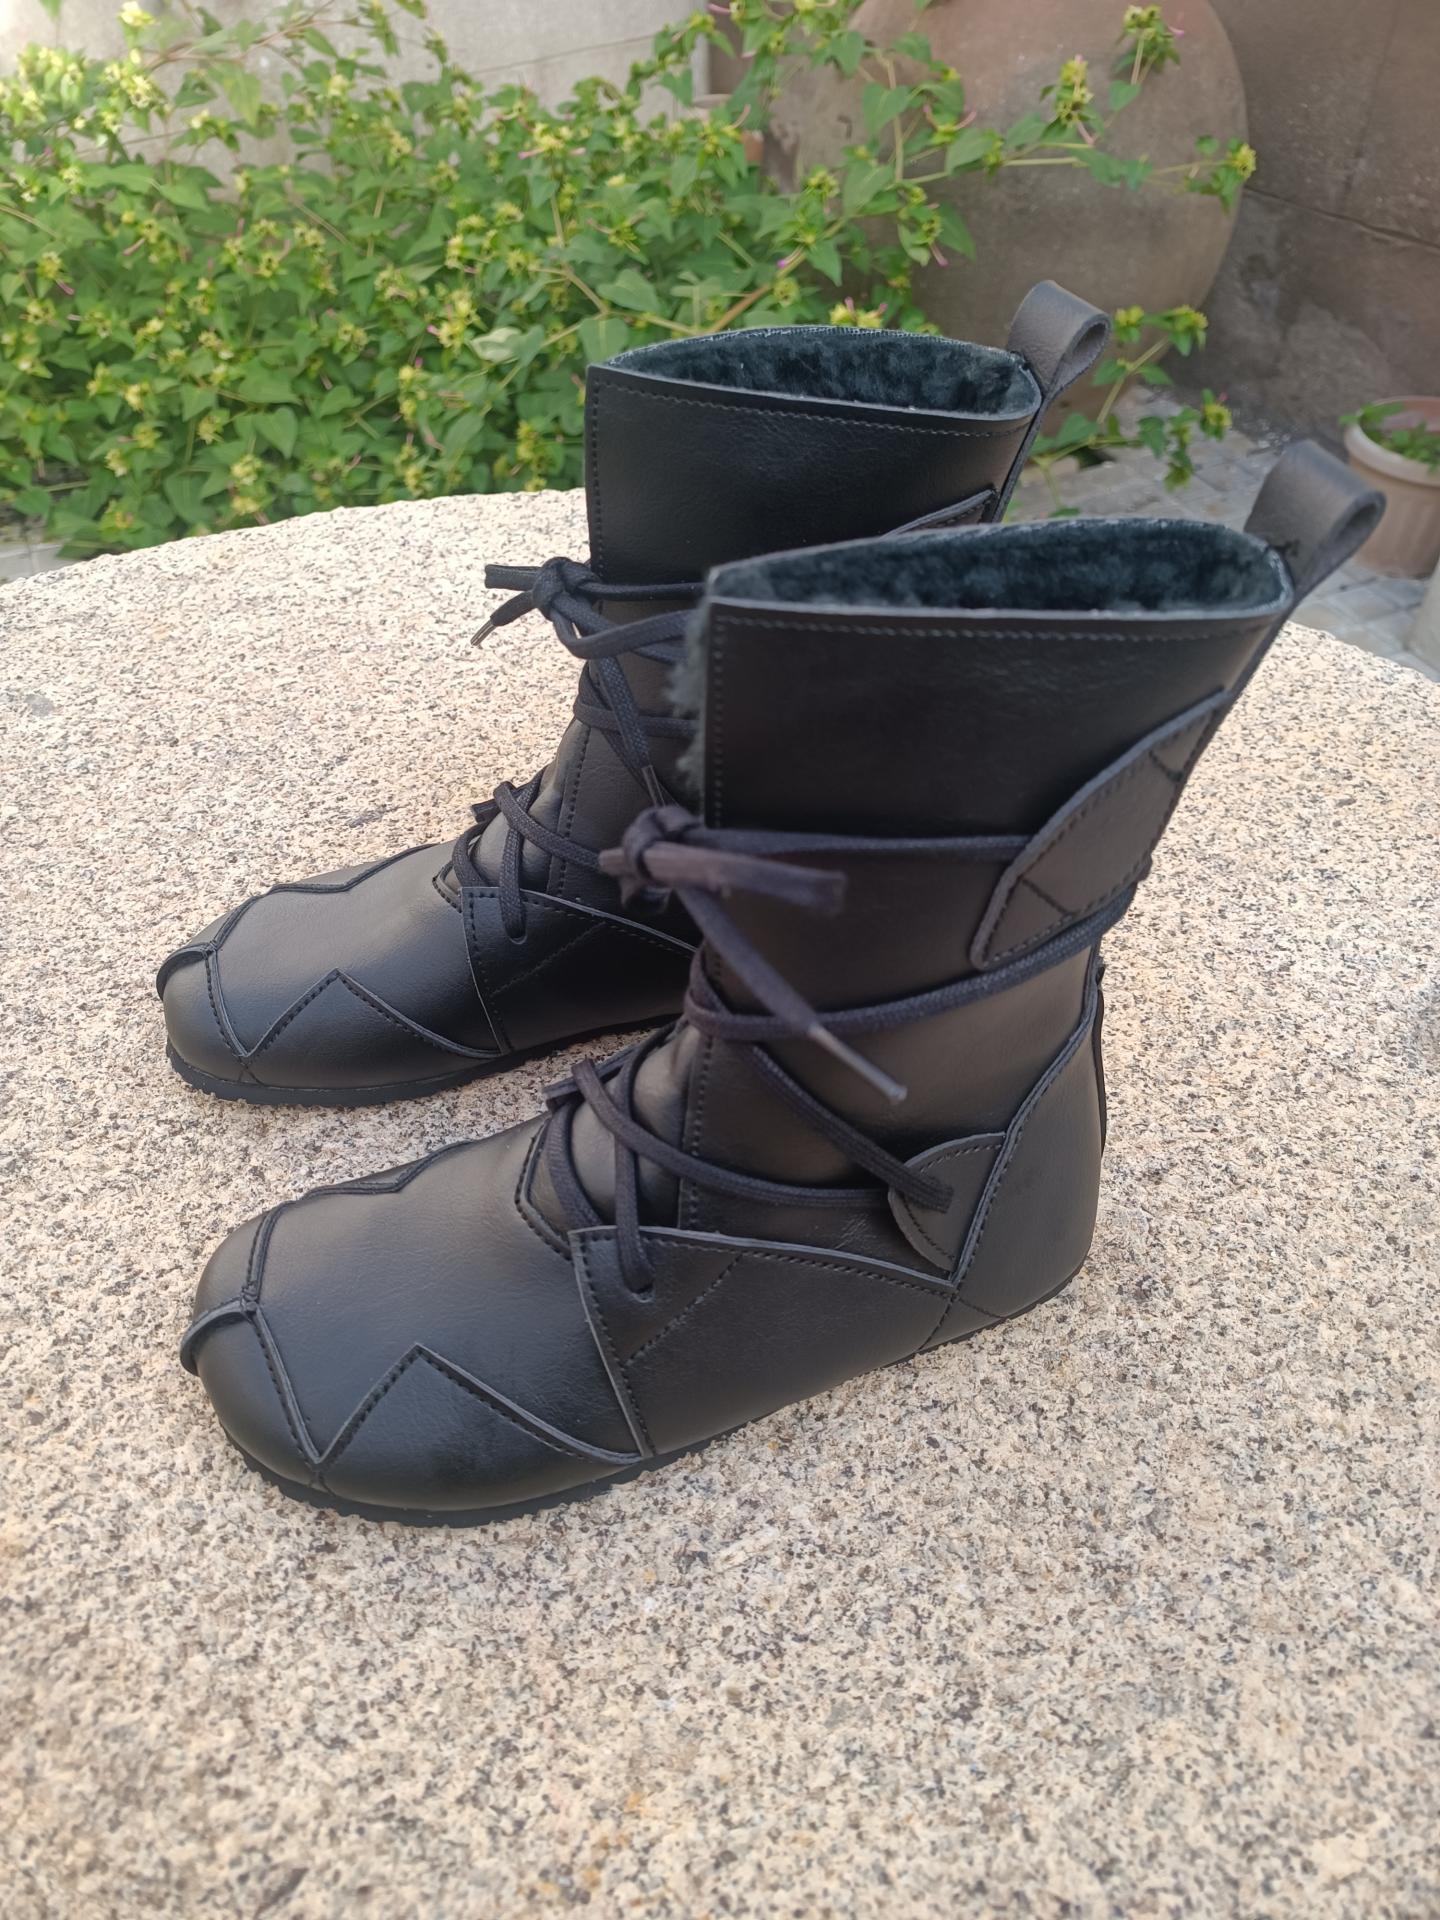 BAREFOOT BOSQUE color NEGRO con forro negro,  suelas Vibram SUPERNEWFLEX​ de 6mm de grosor, zapatos Barefoot para mujer y hombre, calzado Barefoot, zapato veganos, eco-friendly, barefoot.